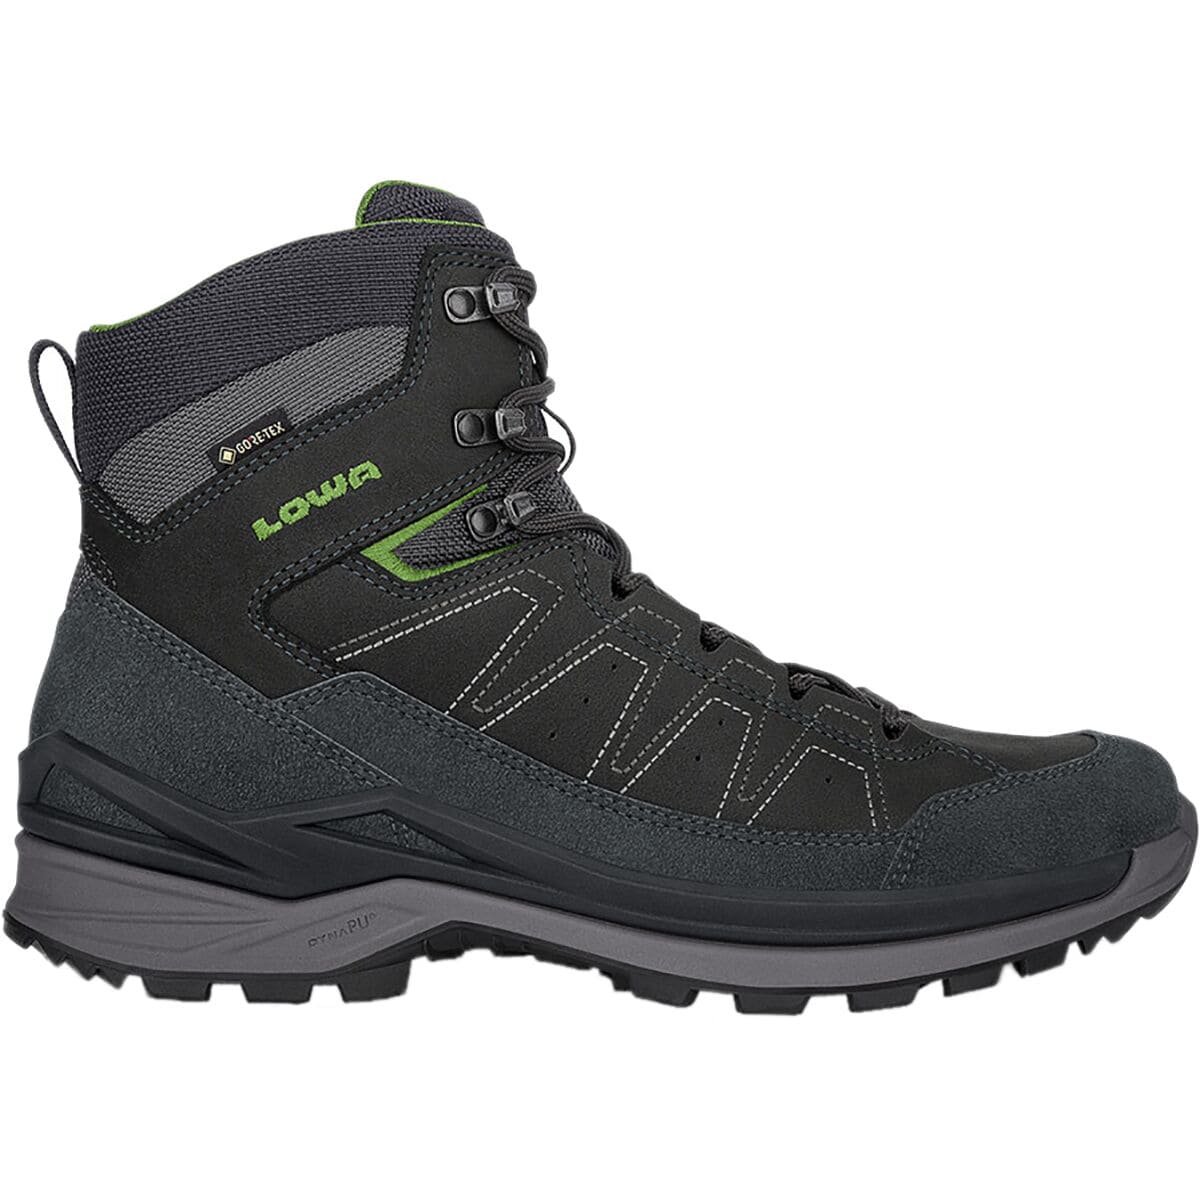 Lowa Toro Evo GTX Mid Hiking Boot - Men's